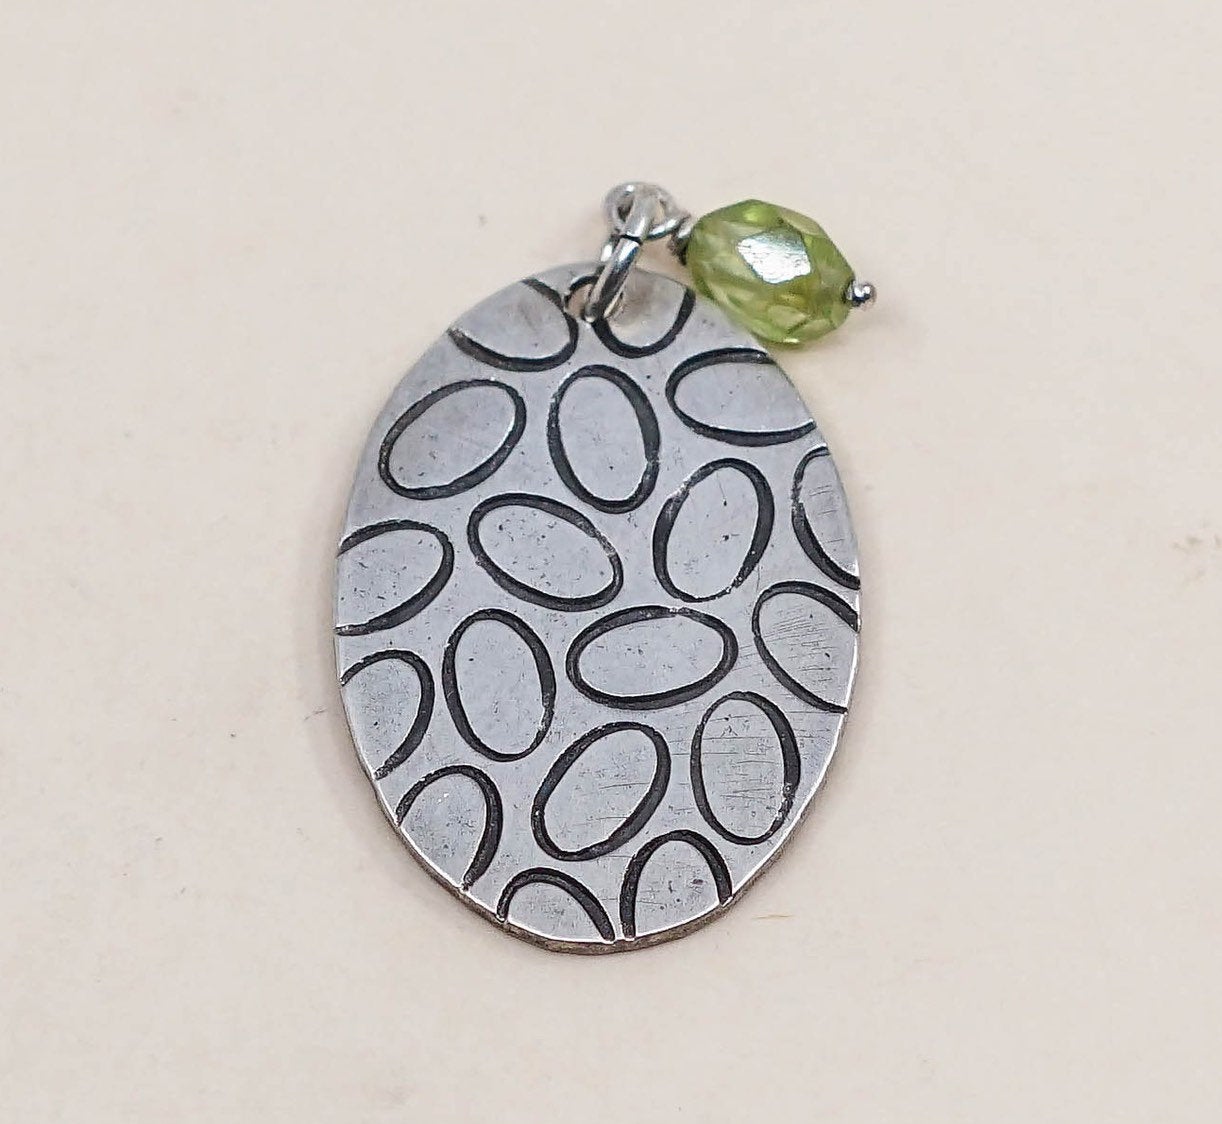 VTG Sterling silver handmade pendant, Mexico 925 leafy tag w/ Peridot